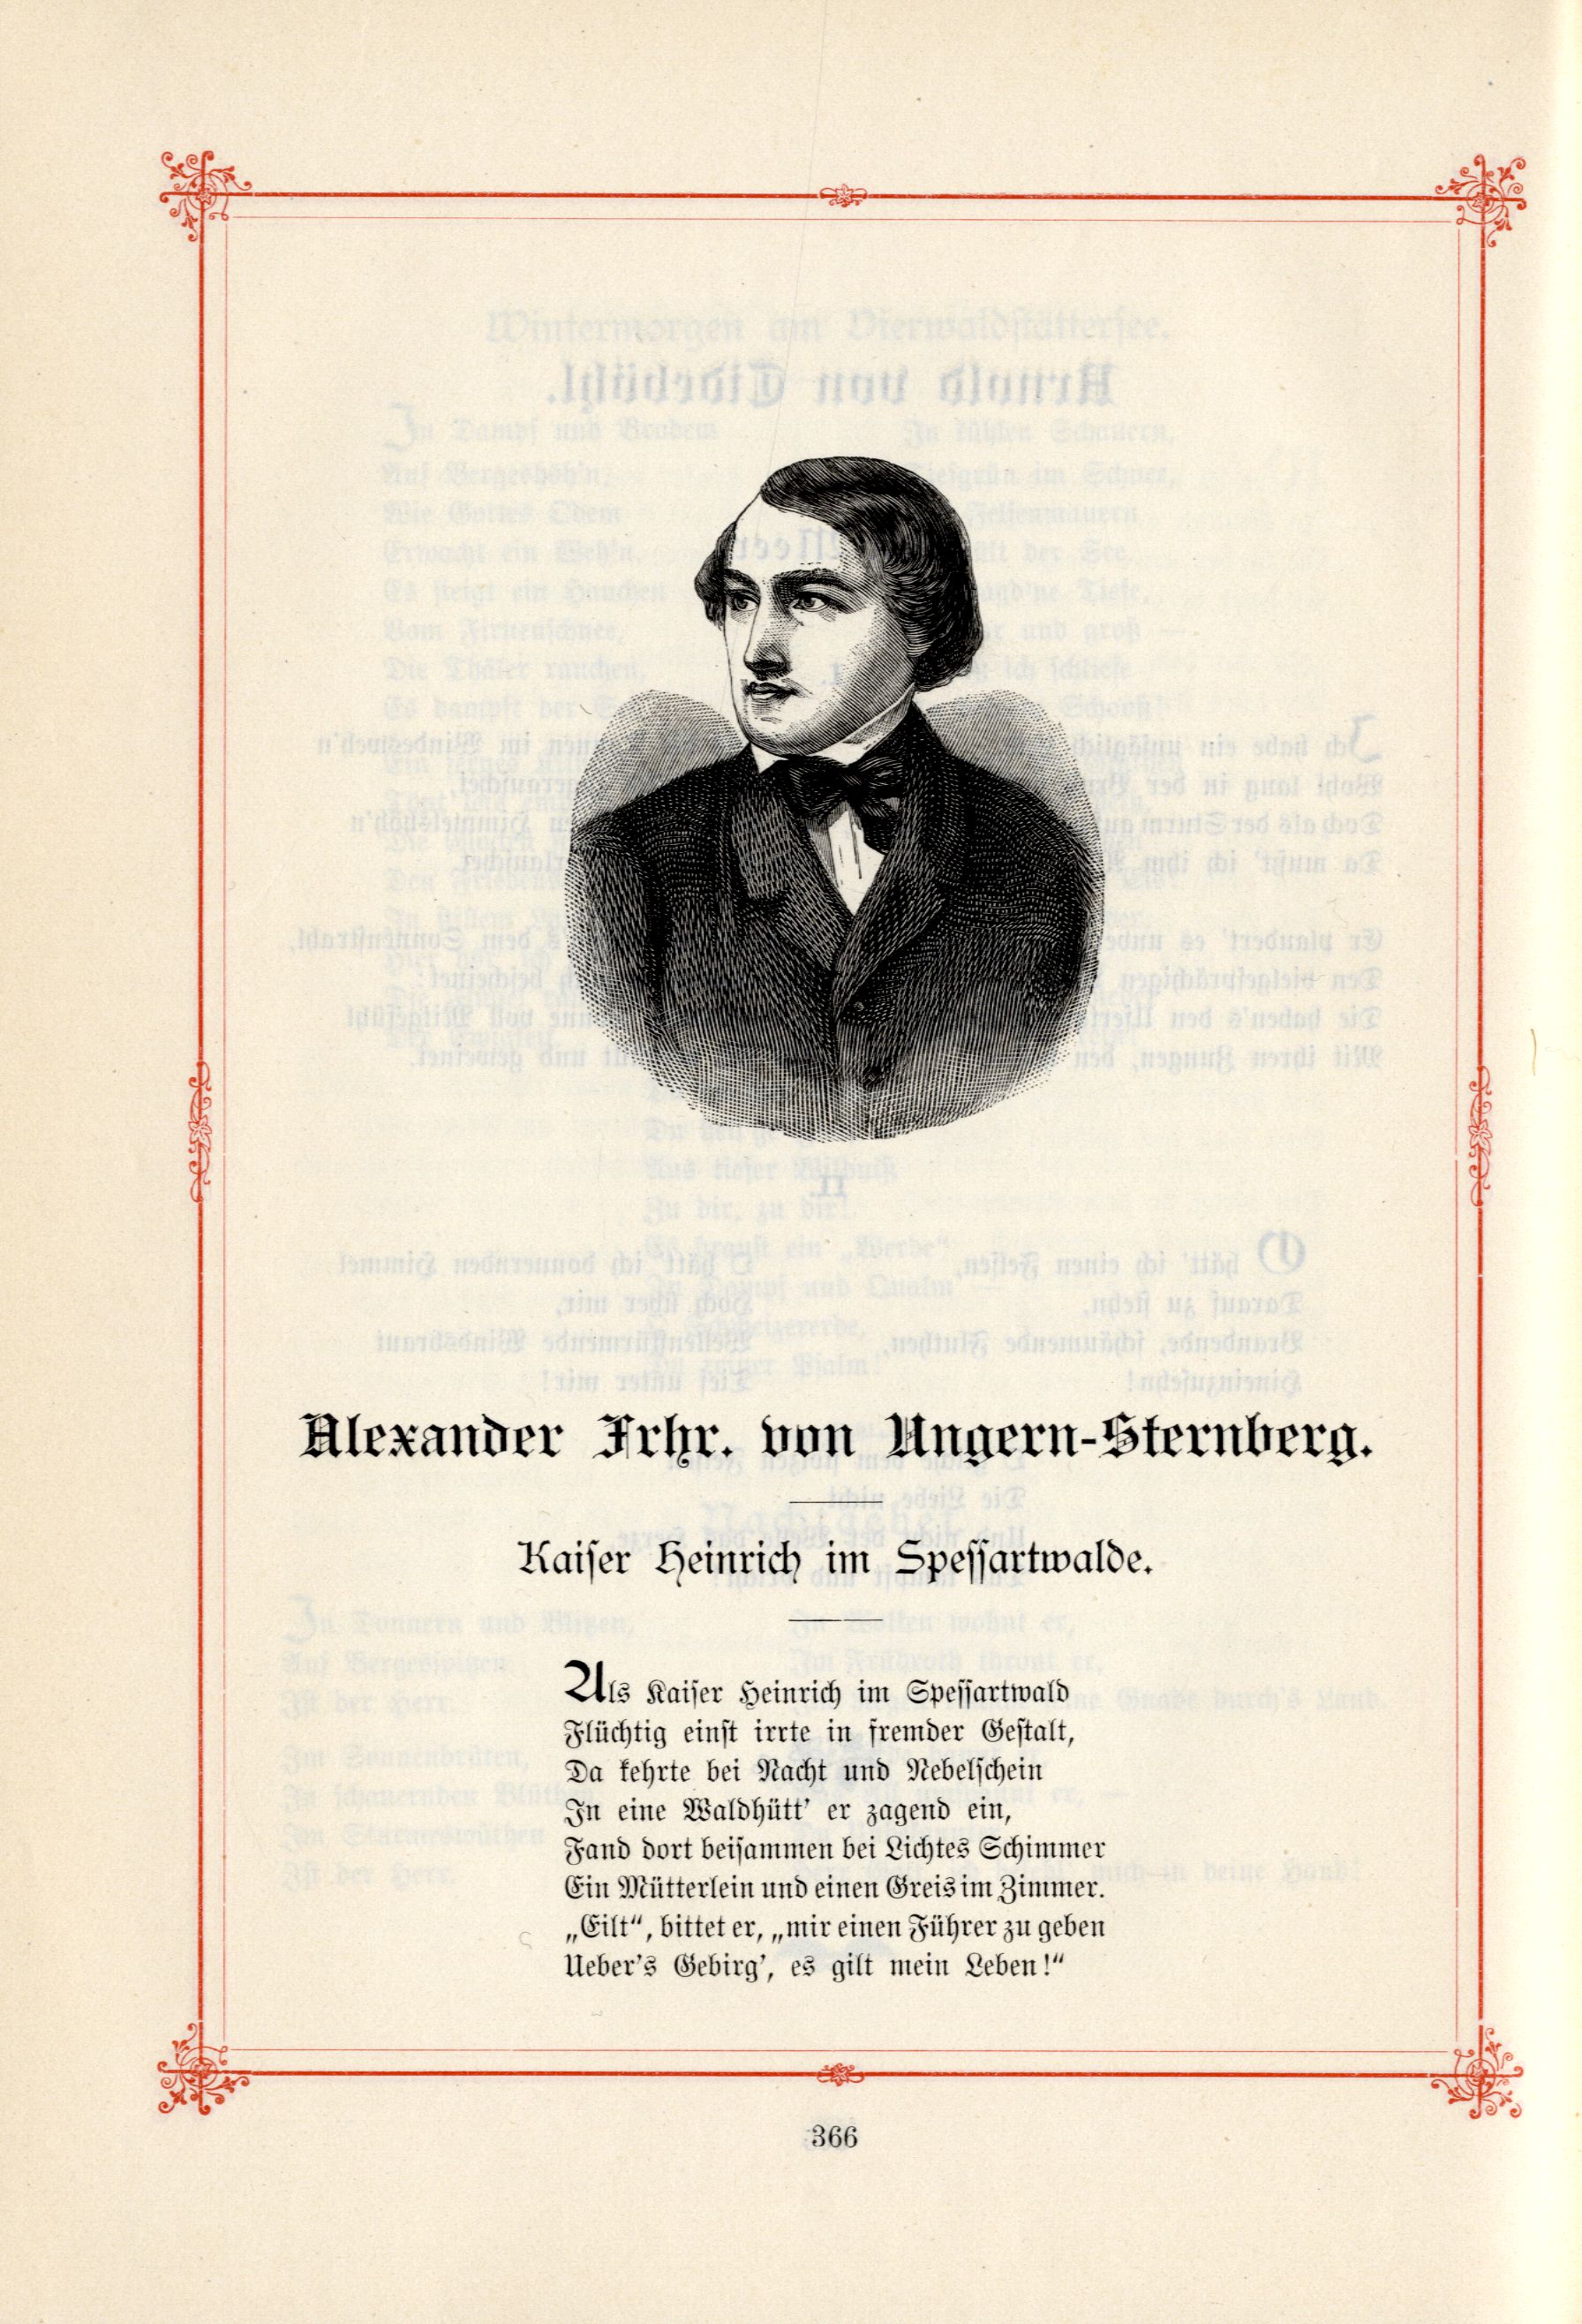 Kaiser Heinrich im Spessartwalde. (1895) | 1. (366) Main body of text